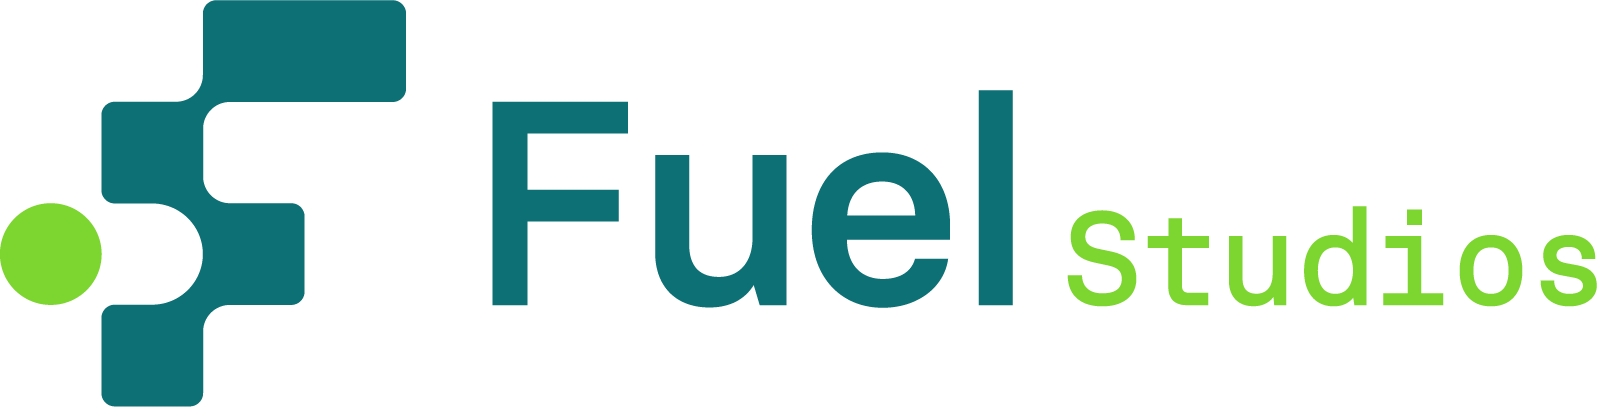 FUEL Studios, Inc.'s company logo.